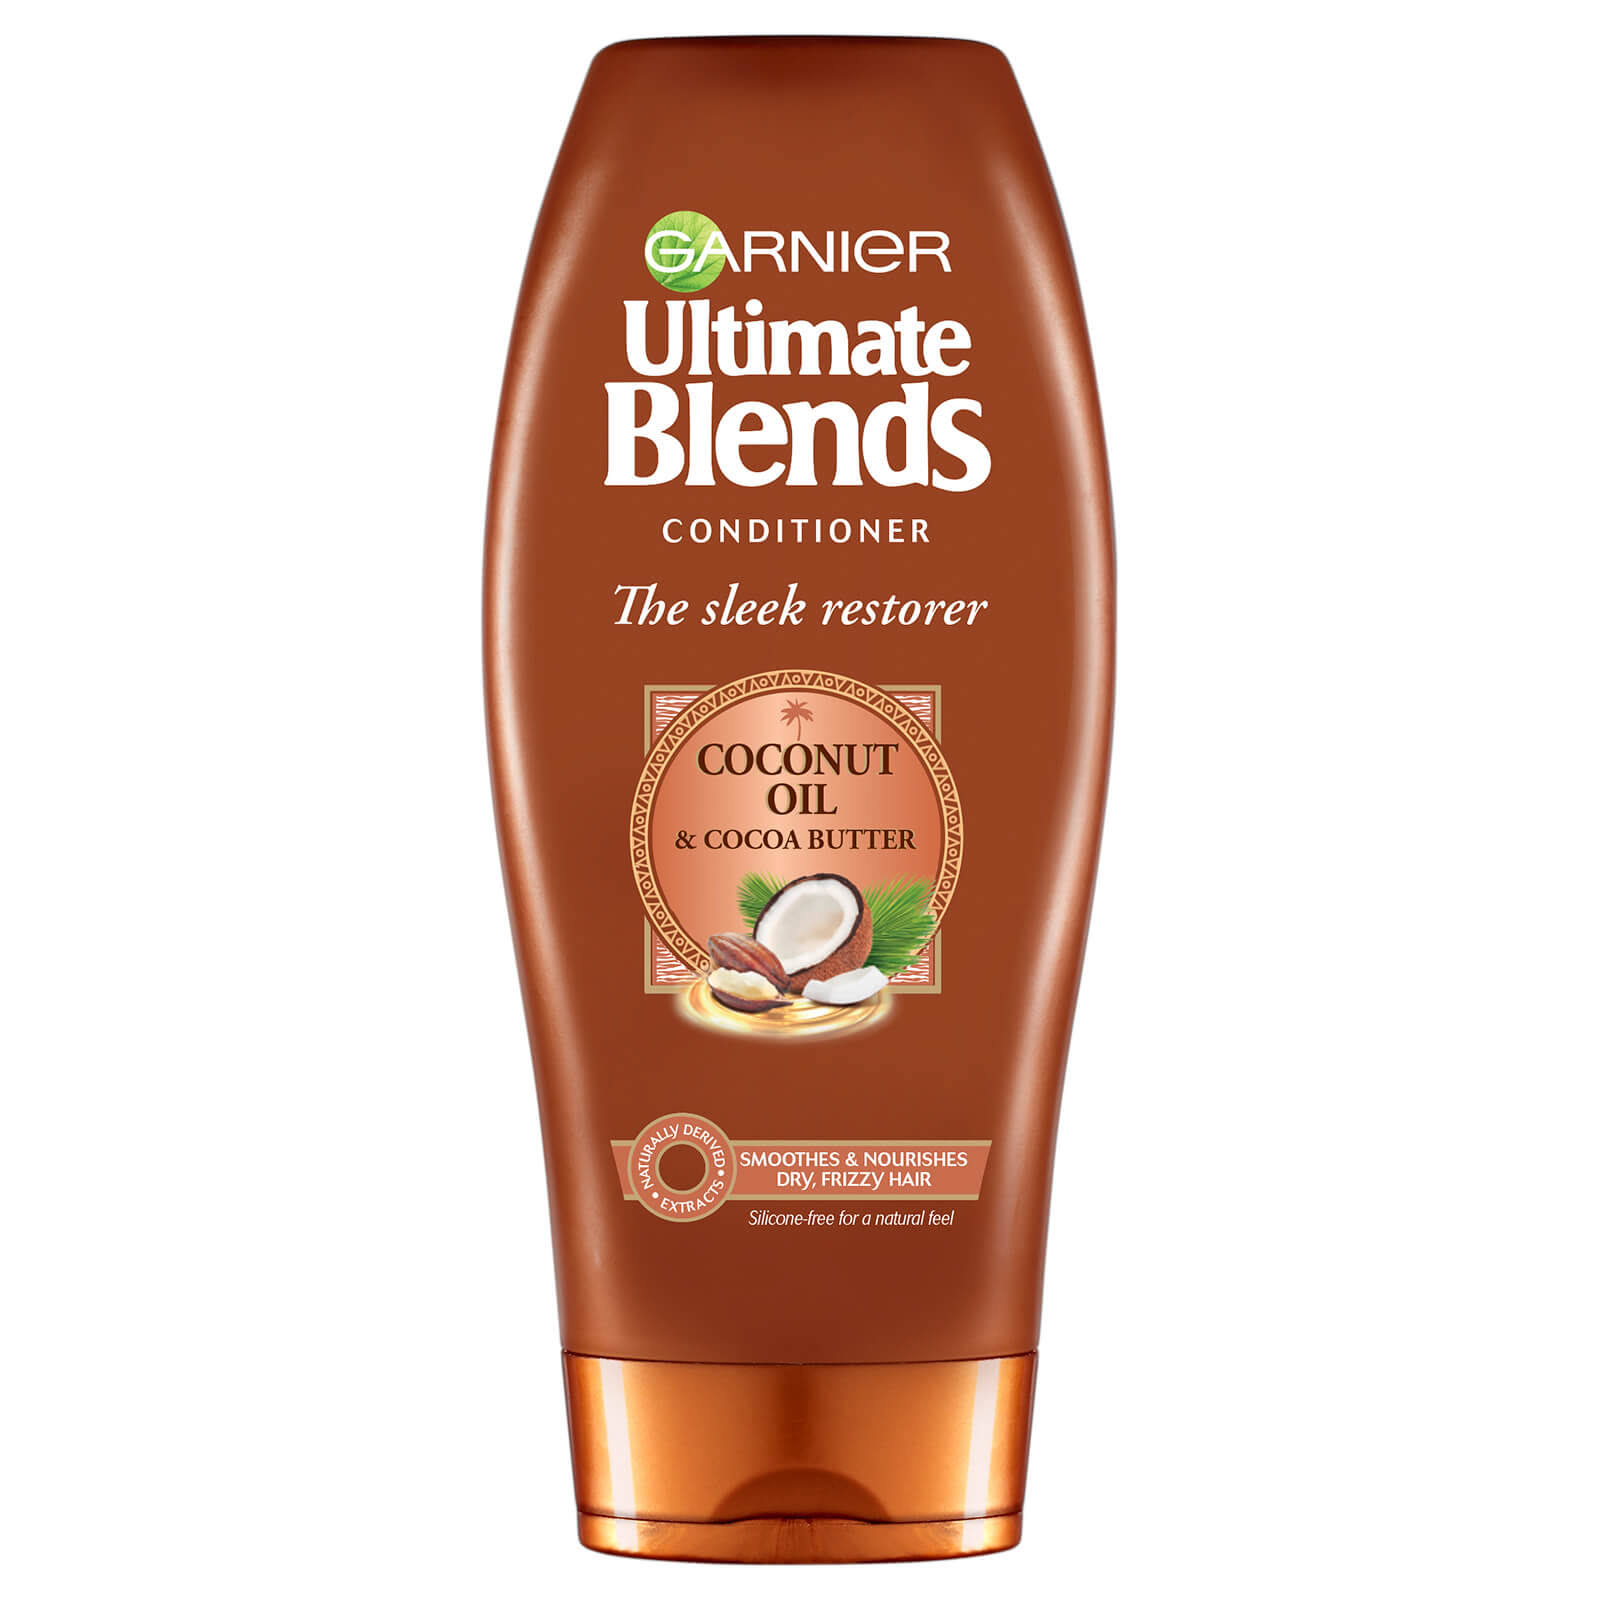 Garnier Ultimate Blends Conditioner - Coconut Oil & Cocoa Butter, 360ml